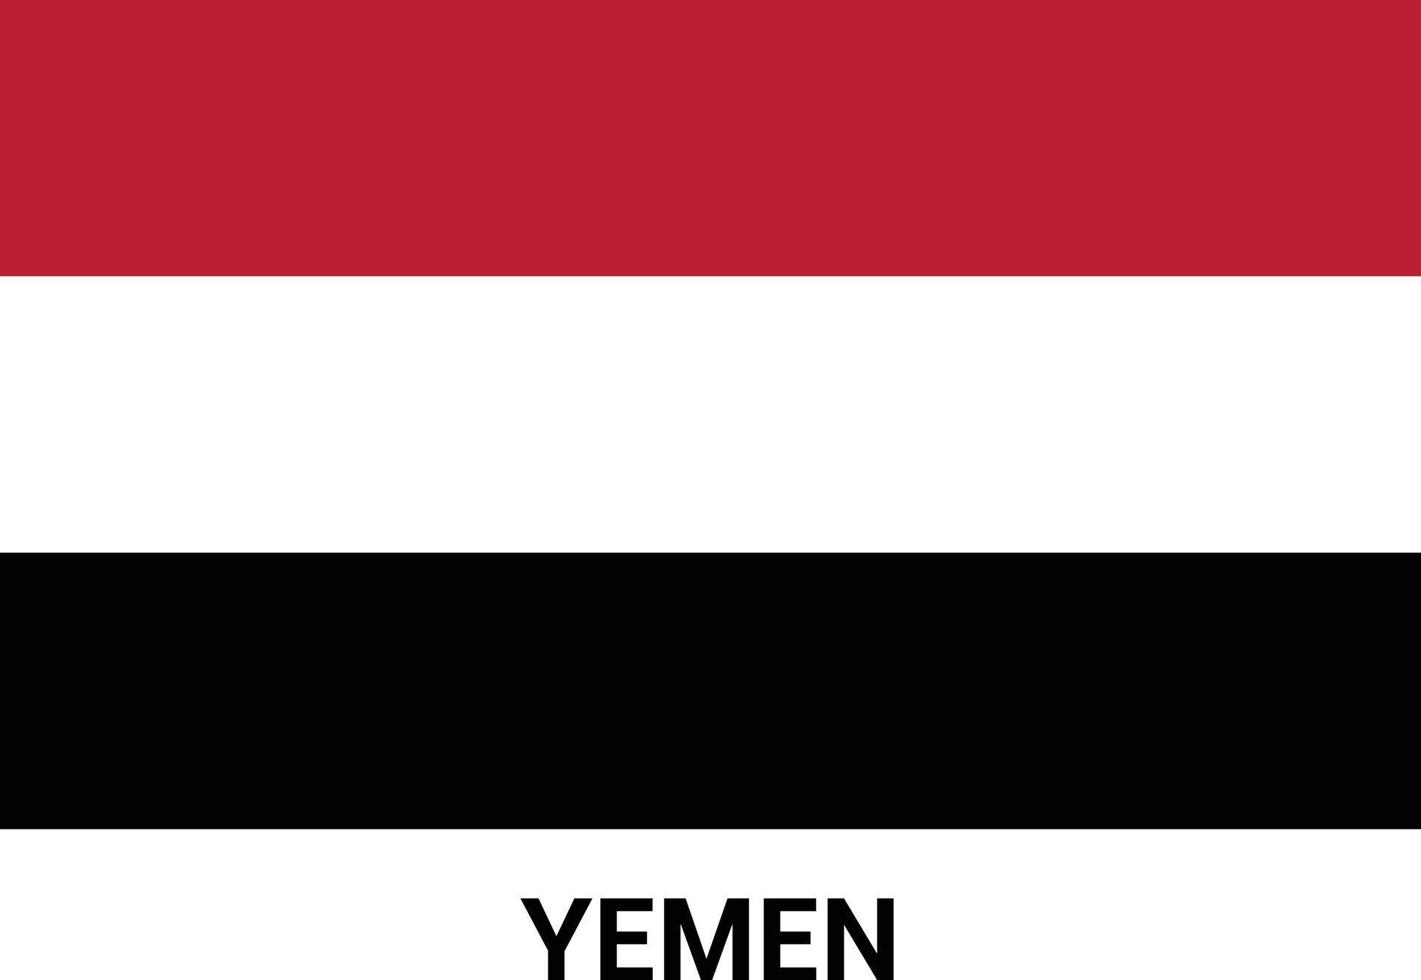 vecteur de carte de conception fête de l'indépendance du yémen